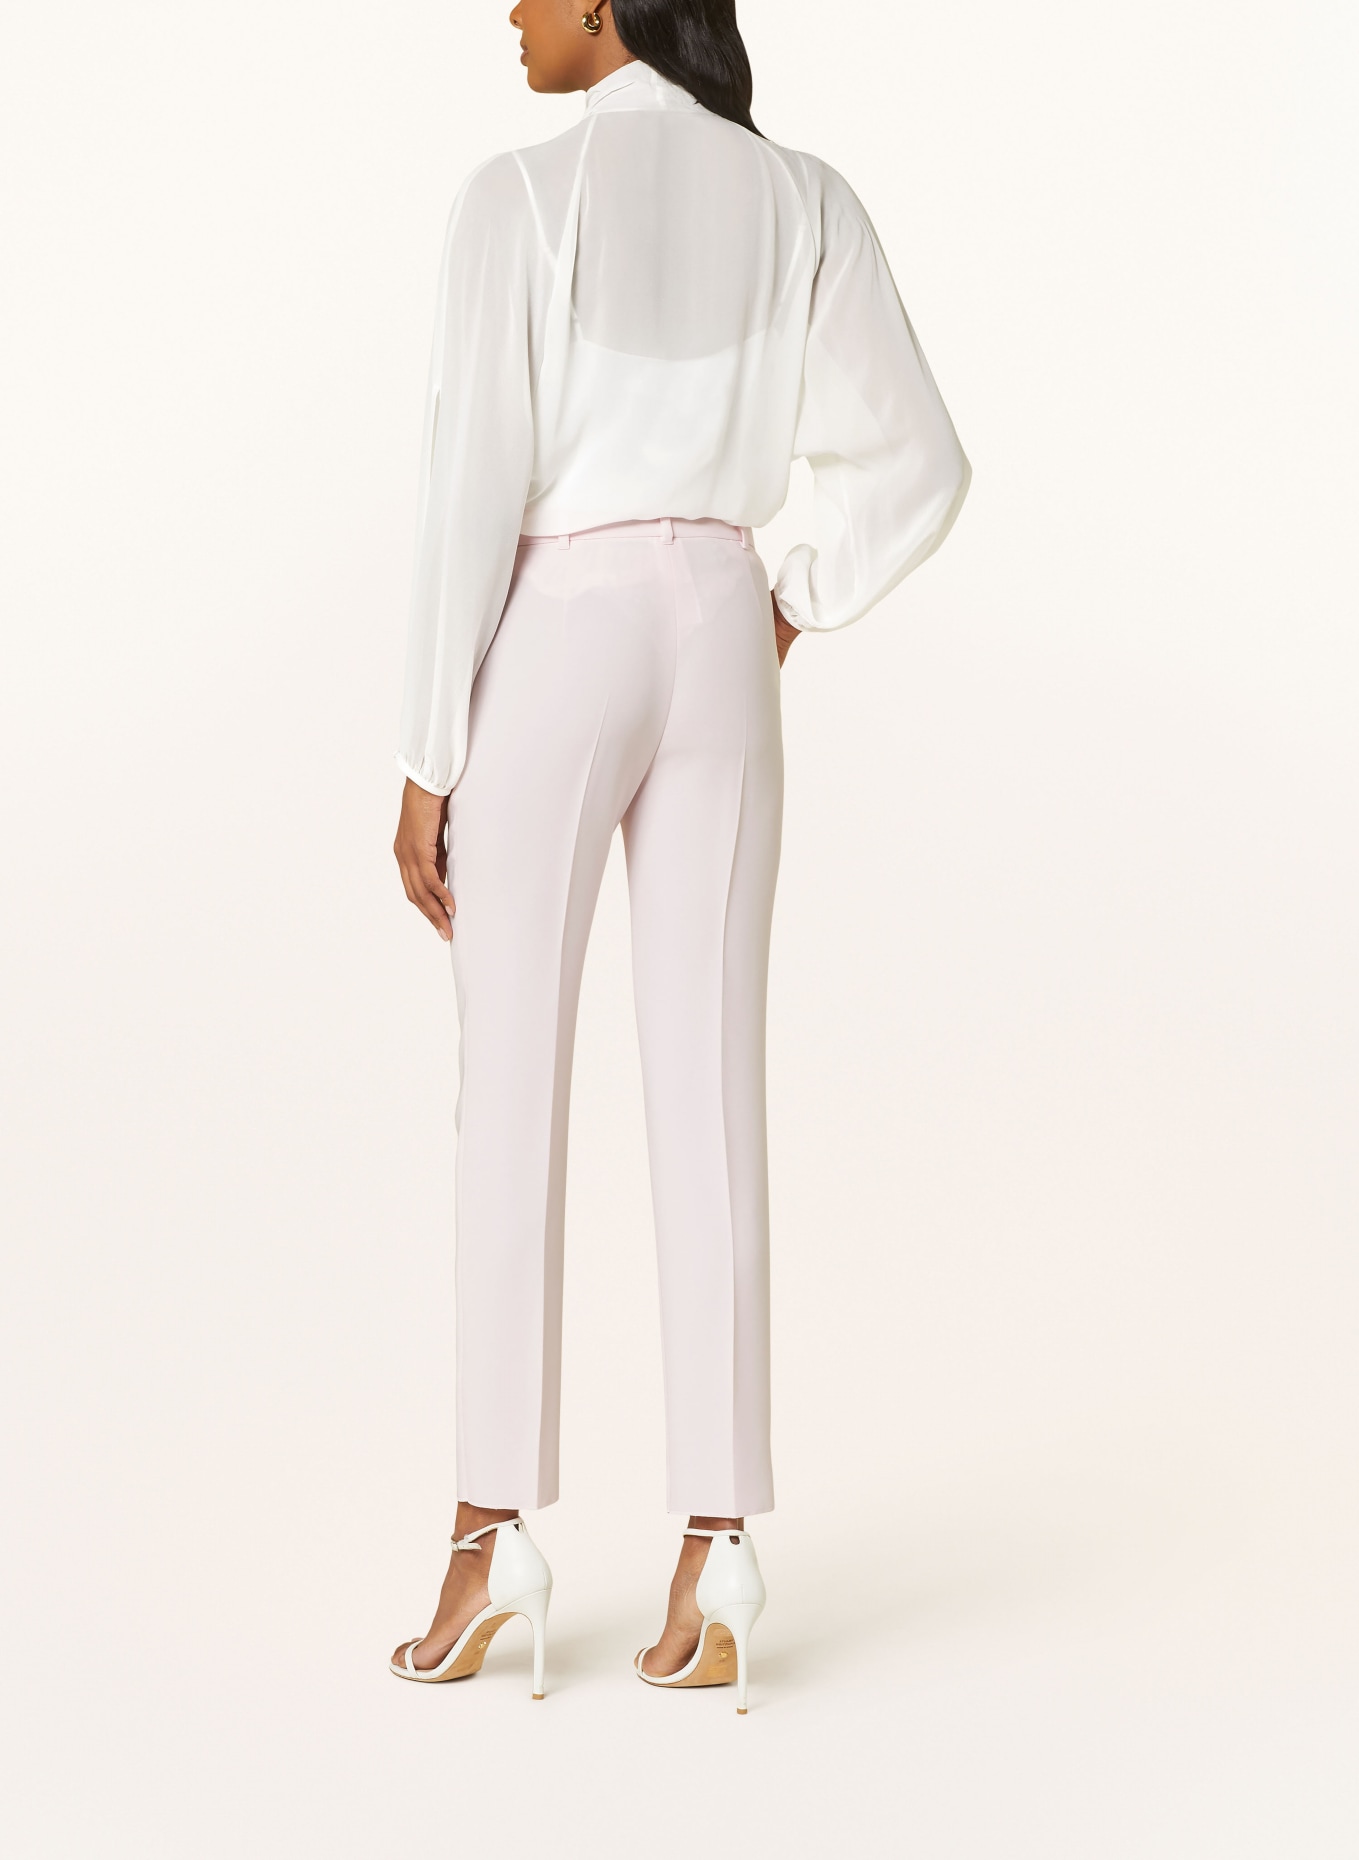 MaxMara STUDIO Bow-tie blouse FASCINO in silk, Color: WHITE (Image 3)